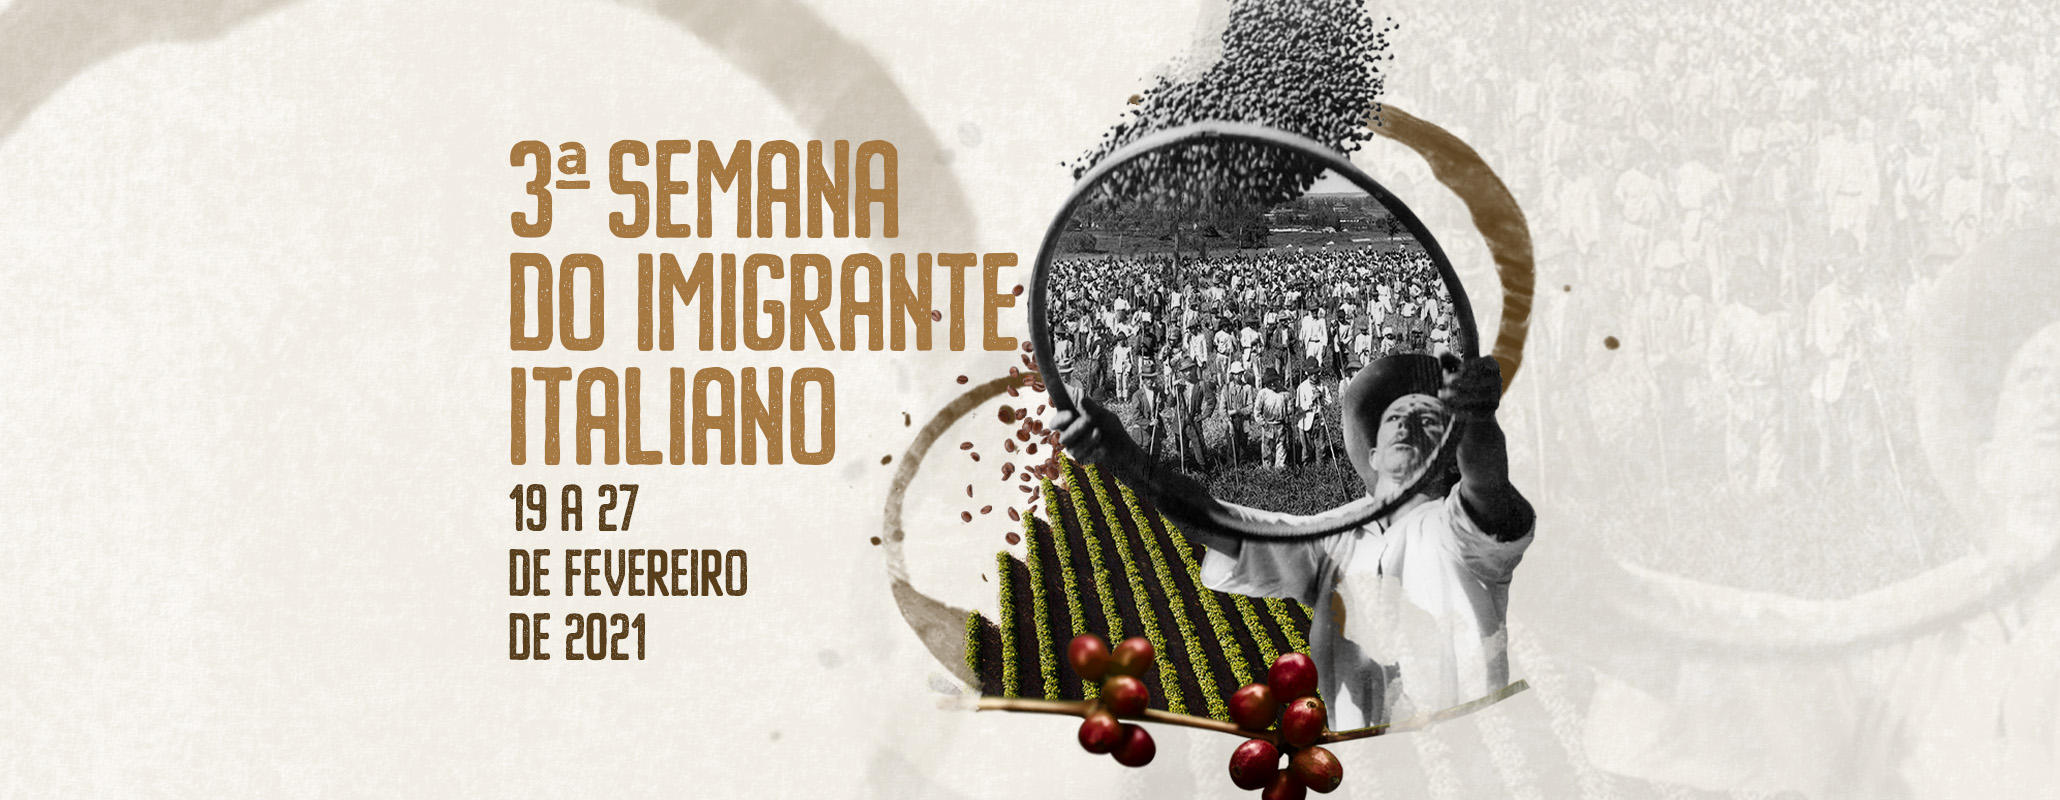 banner-site-03-semana-imigrante-italiano